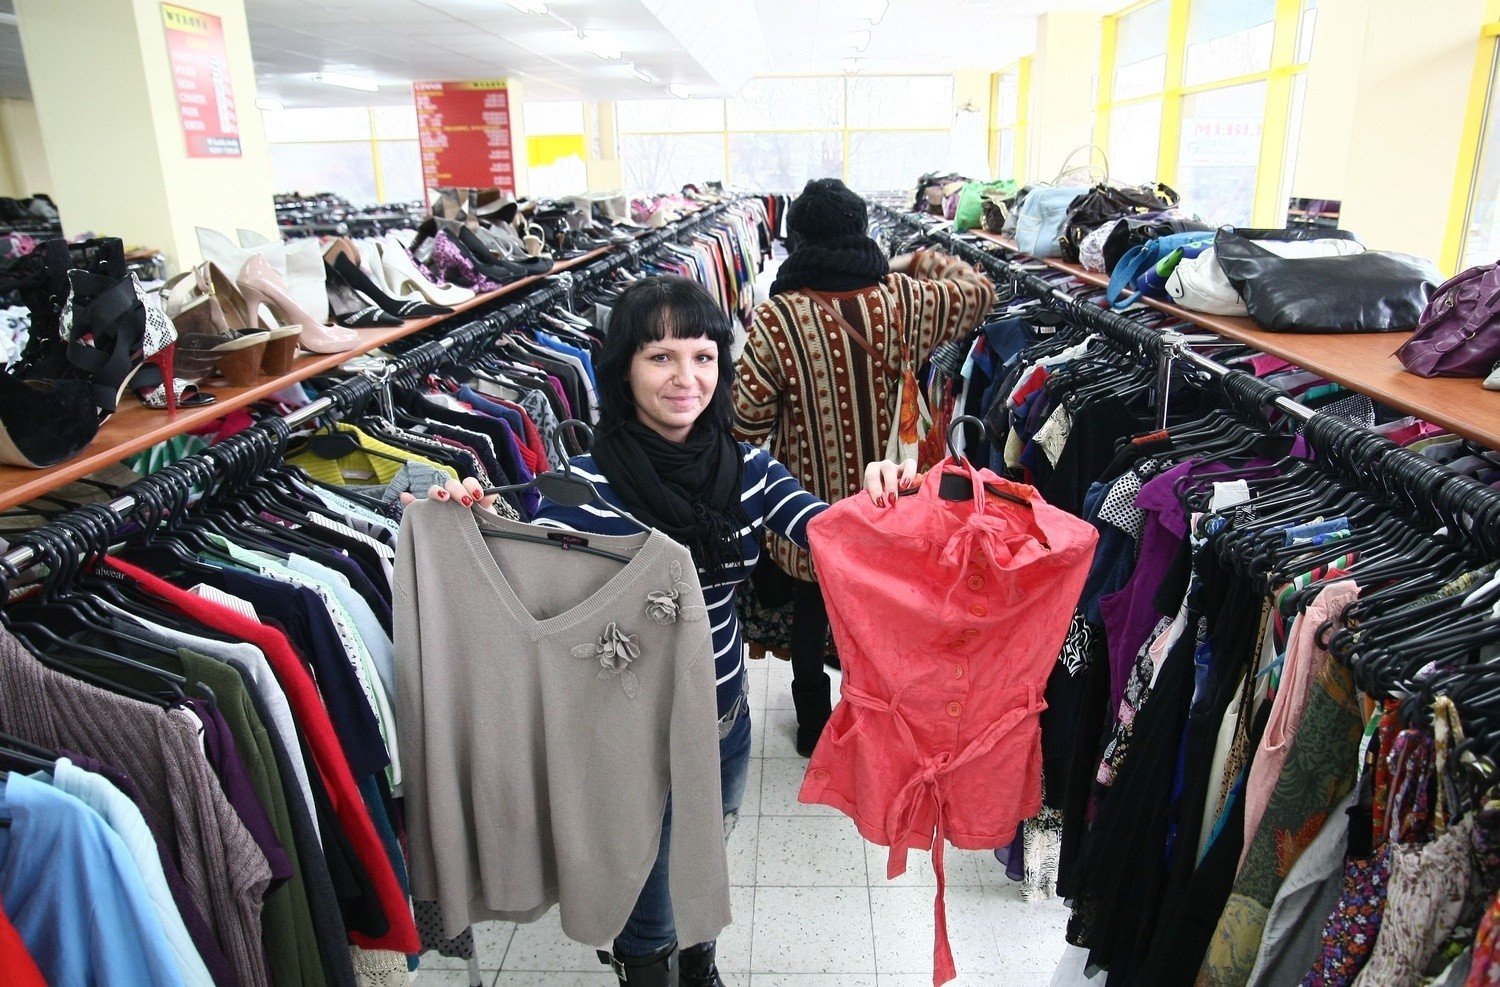 Łódź stolicą lumpeksów! Ponad 300 sklepów z używaną odzieżą | Express  Ilustrowany